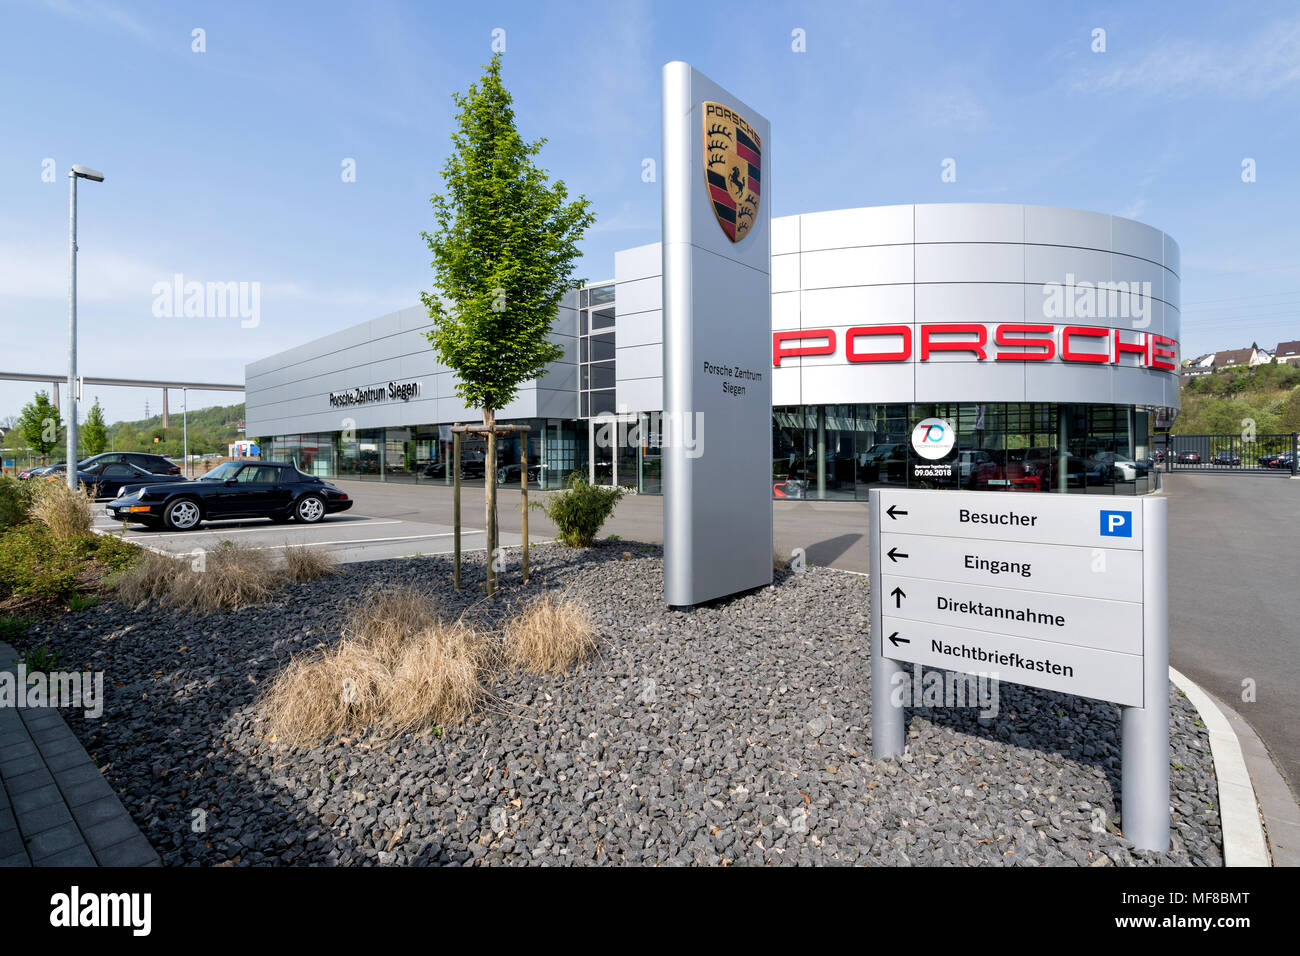 Porsche Zentrum Siegen. Porsche es un fabricante alemán de automóviles especializado en automóviles deportivos de alto rendimiento, SUVs y automóviles. Foto de stock